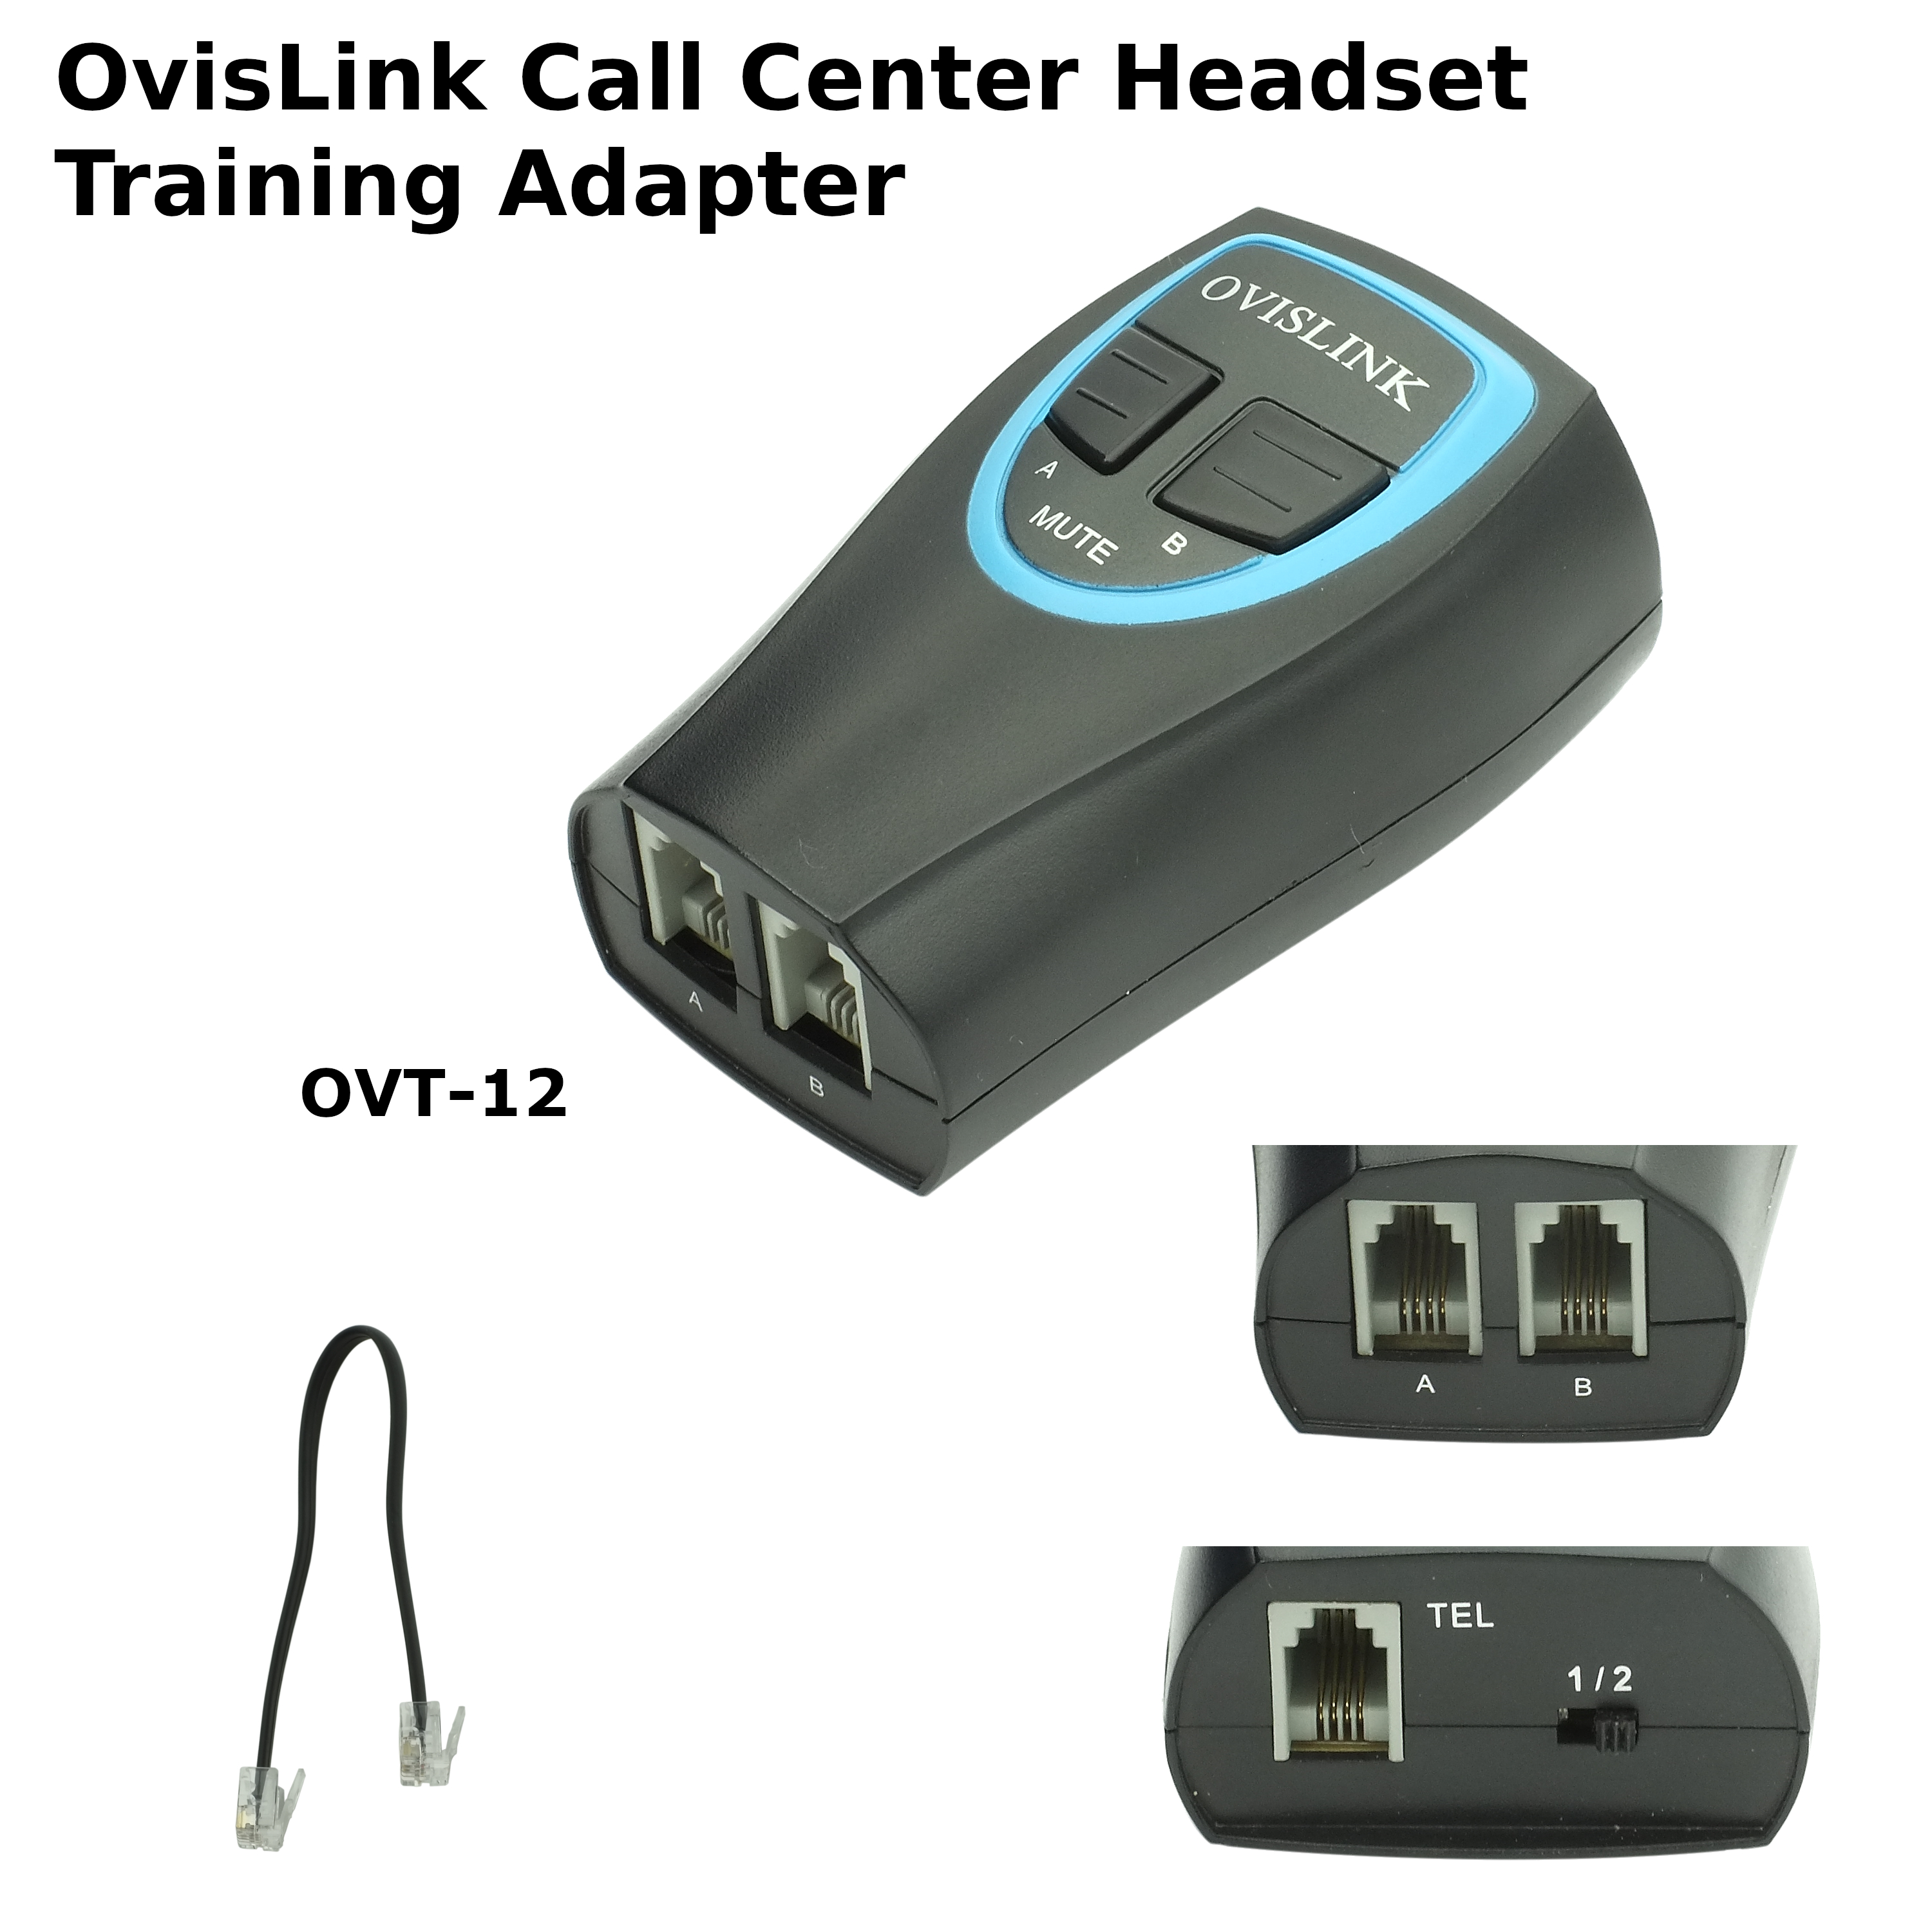 OvisLink Training Adapter